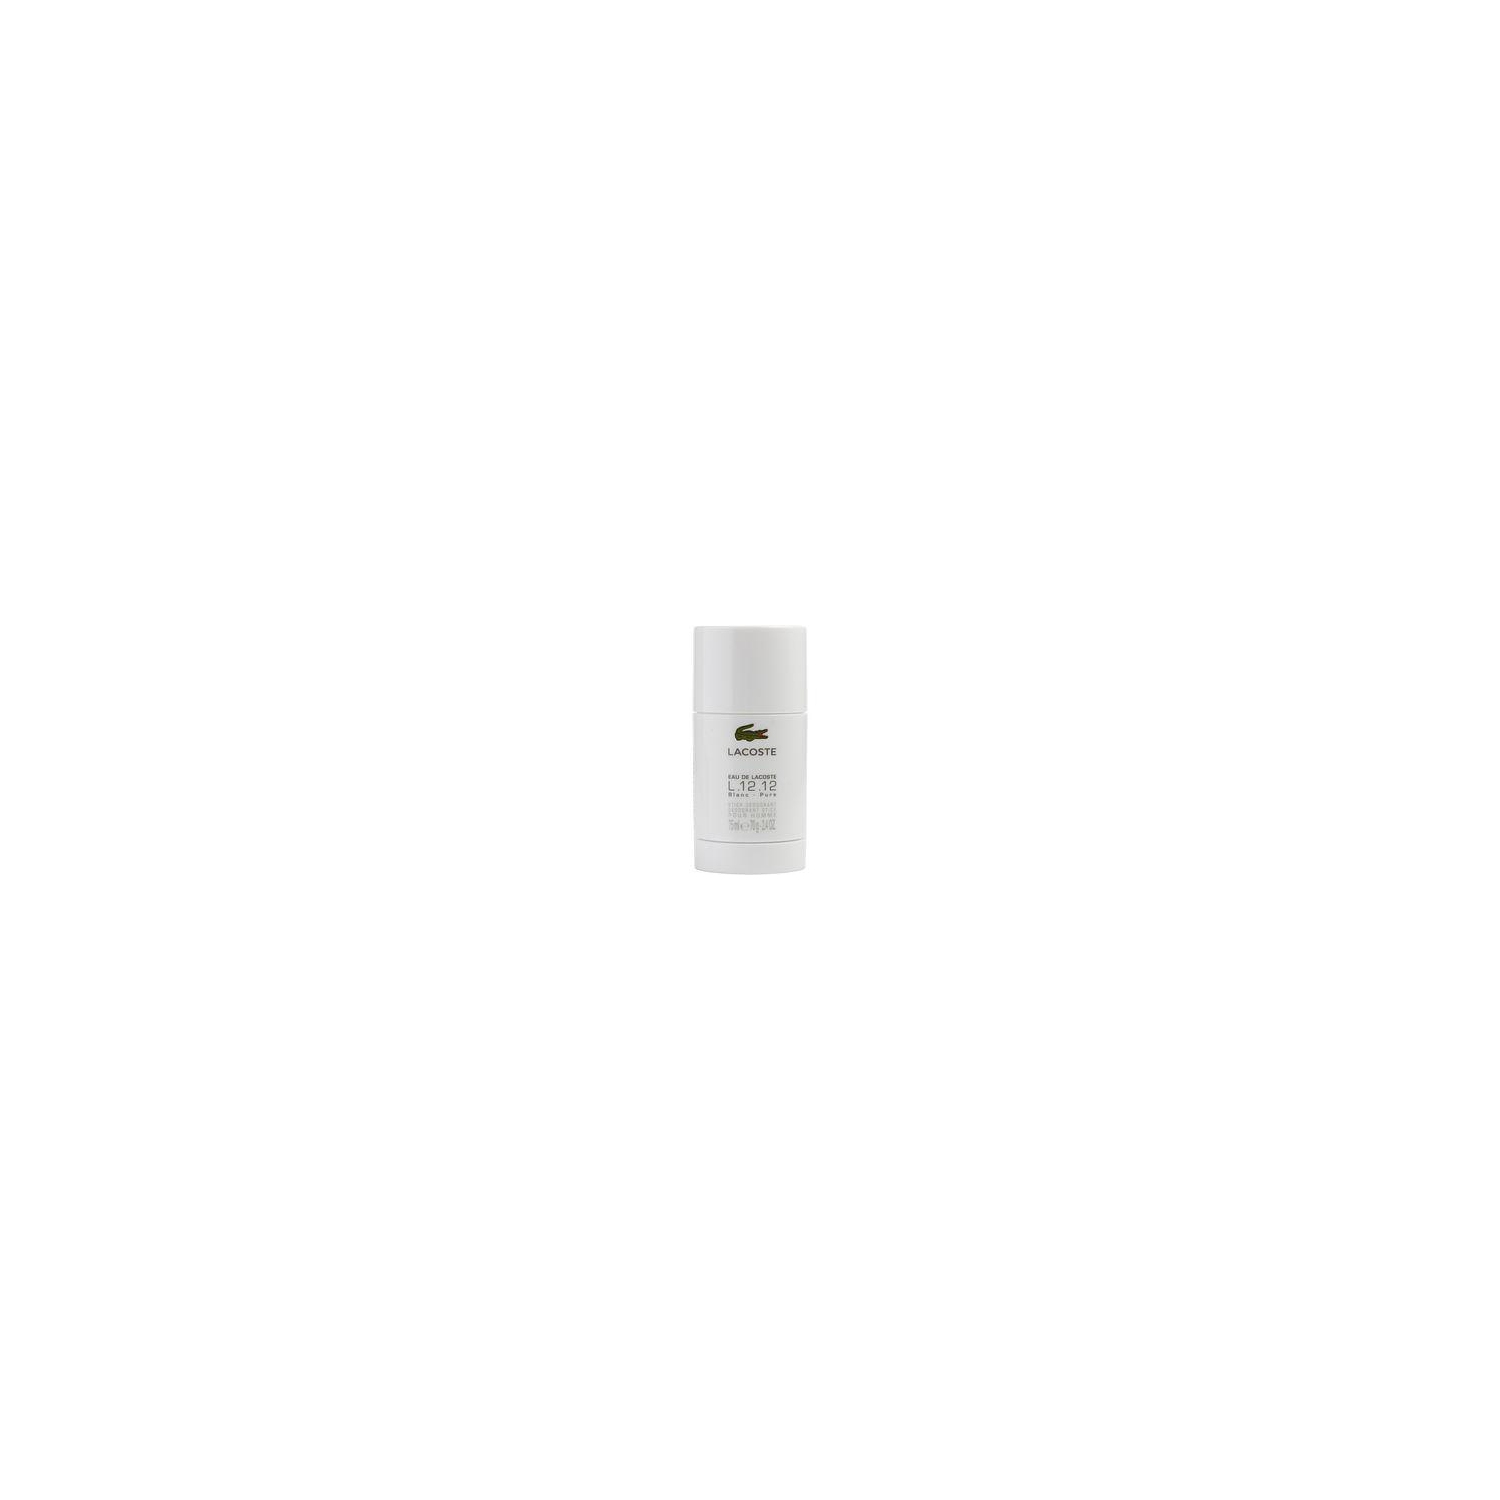 Lacoste Eau De Lacoste L.12.12 Blanc By Lacoste Pure Deodorant Stick 2.4 Oz